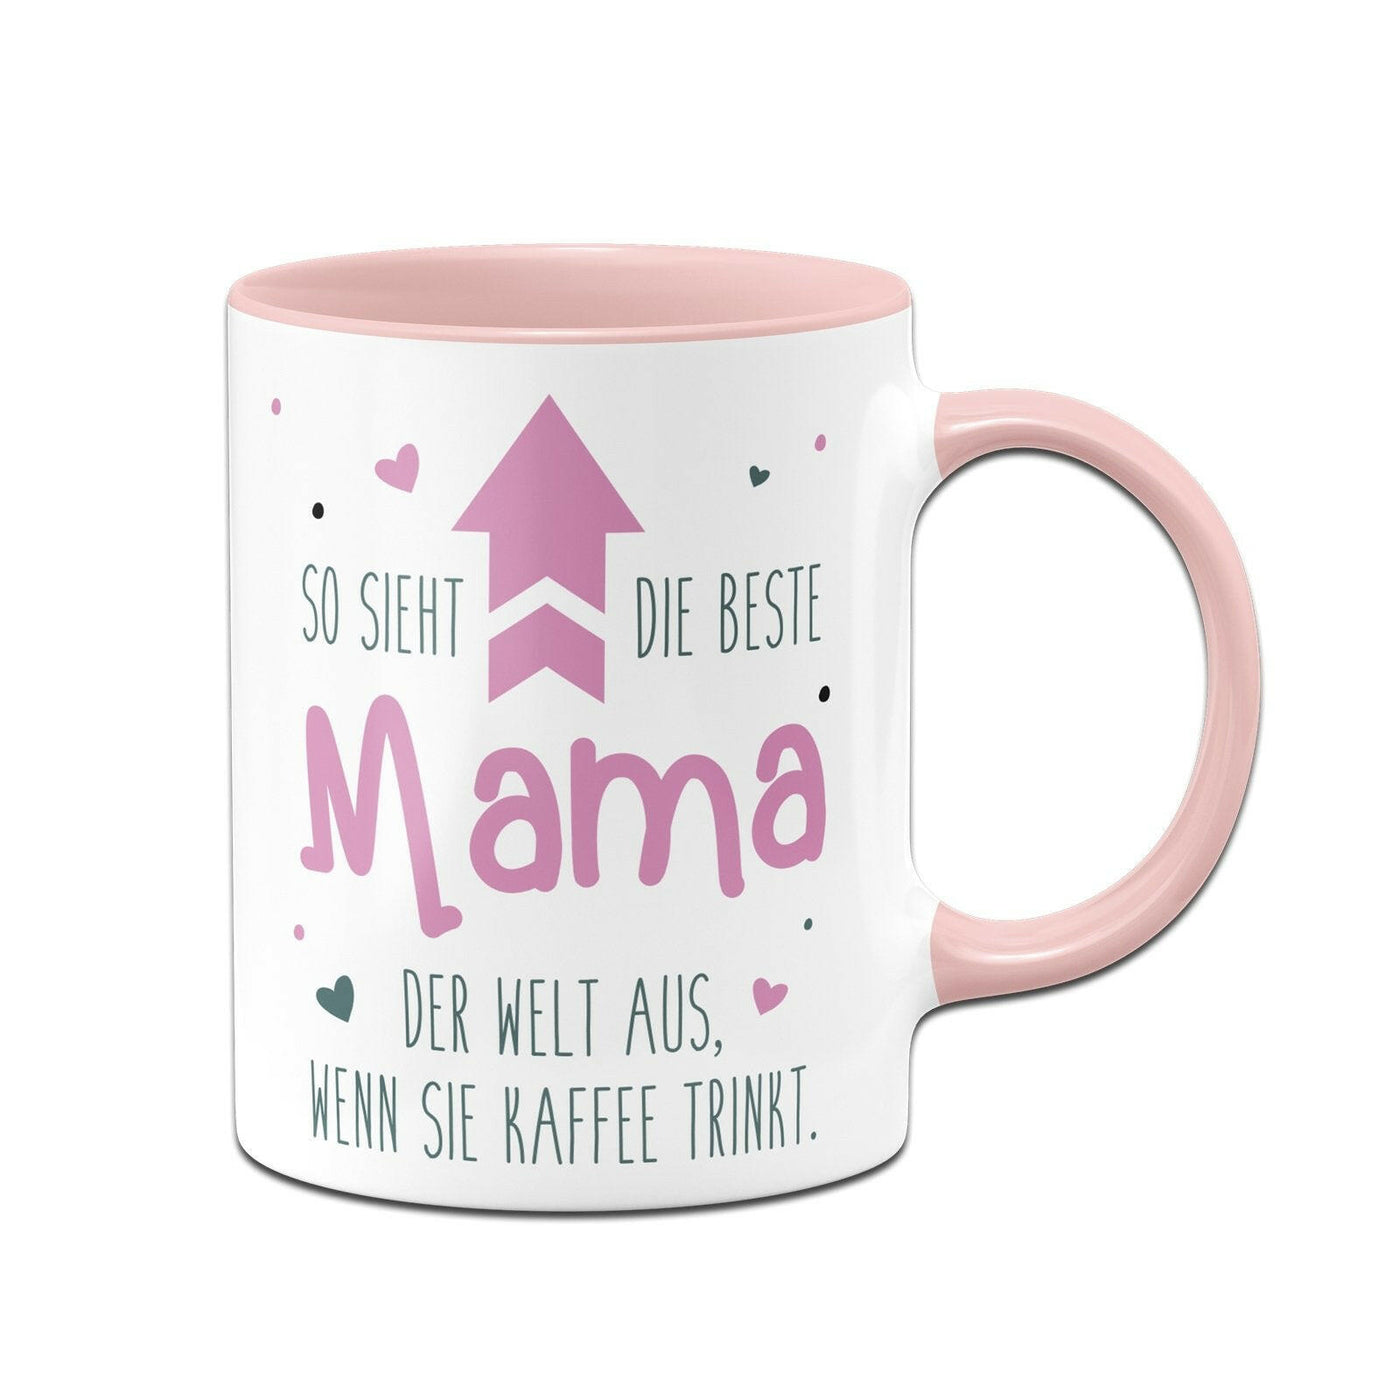 Bild: Tasse - So sieht die beste Mama der Welt aus, wenn sie Kaffee trinkt. Geschenkidee